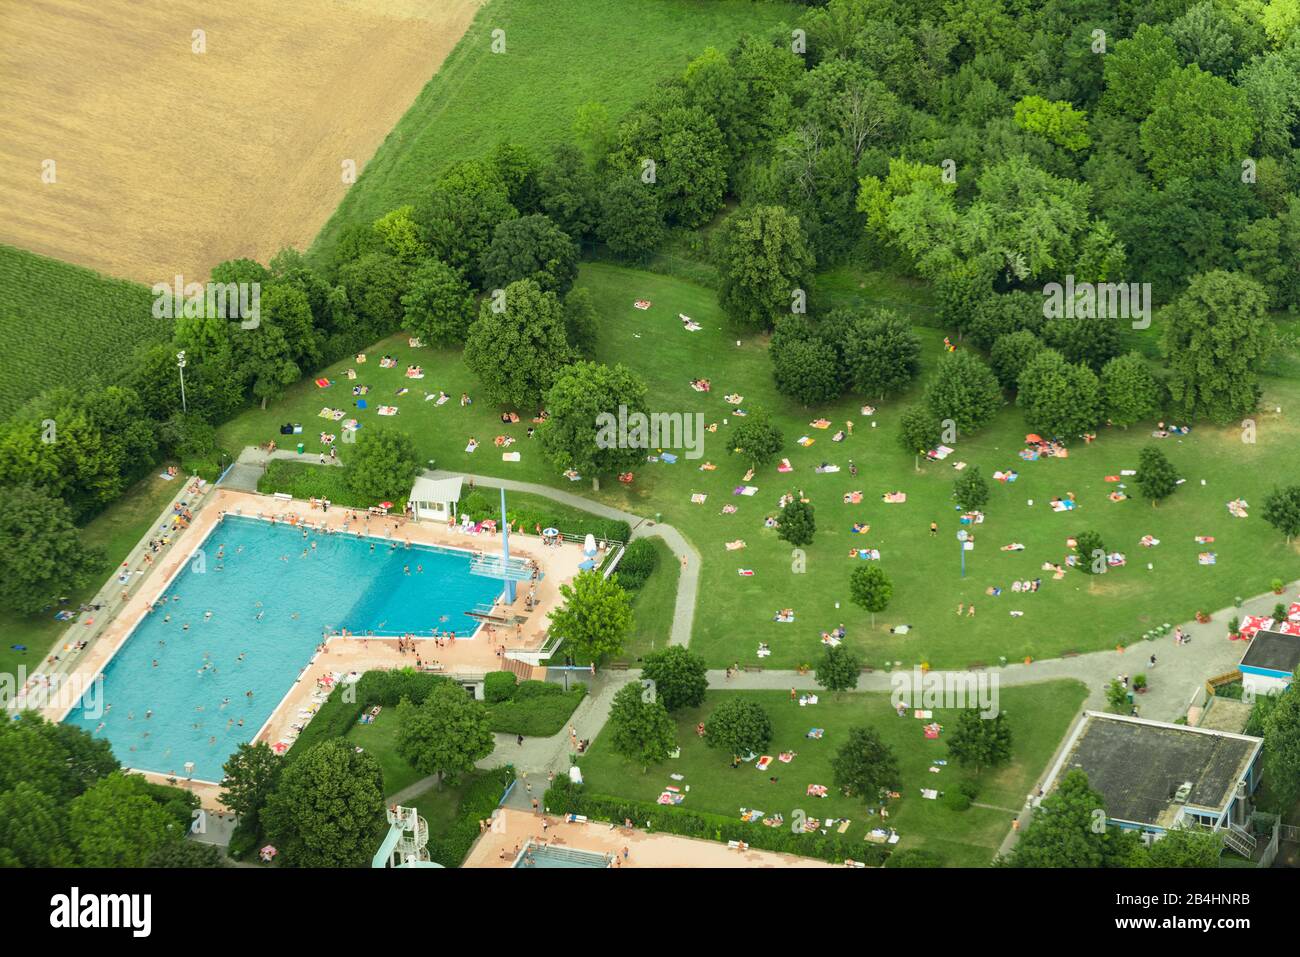 Luftaufnahme vom Freibad Asperg bei Ludwigsburg, Schwimmbecken und Liegewiese Stock Photo